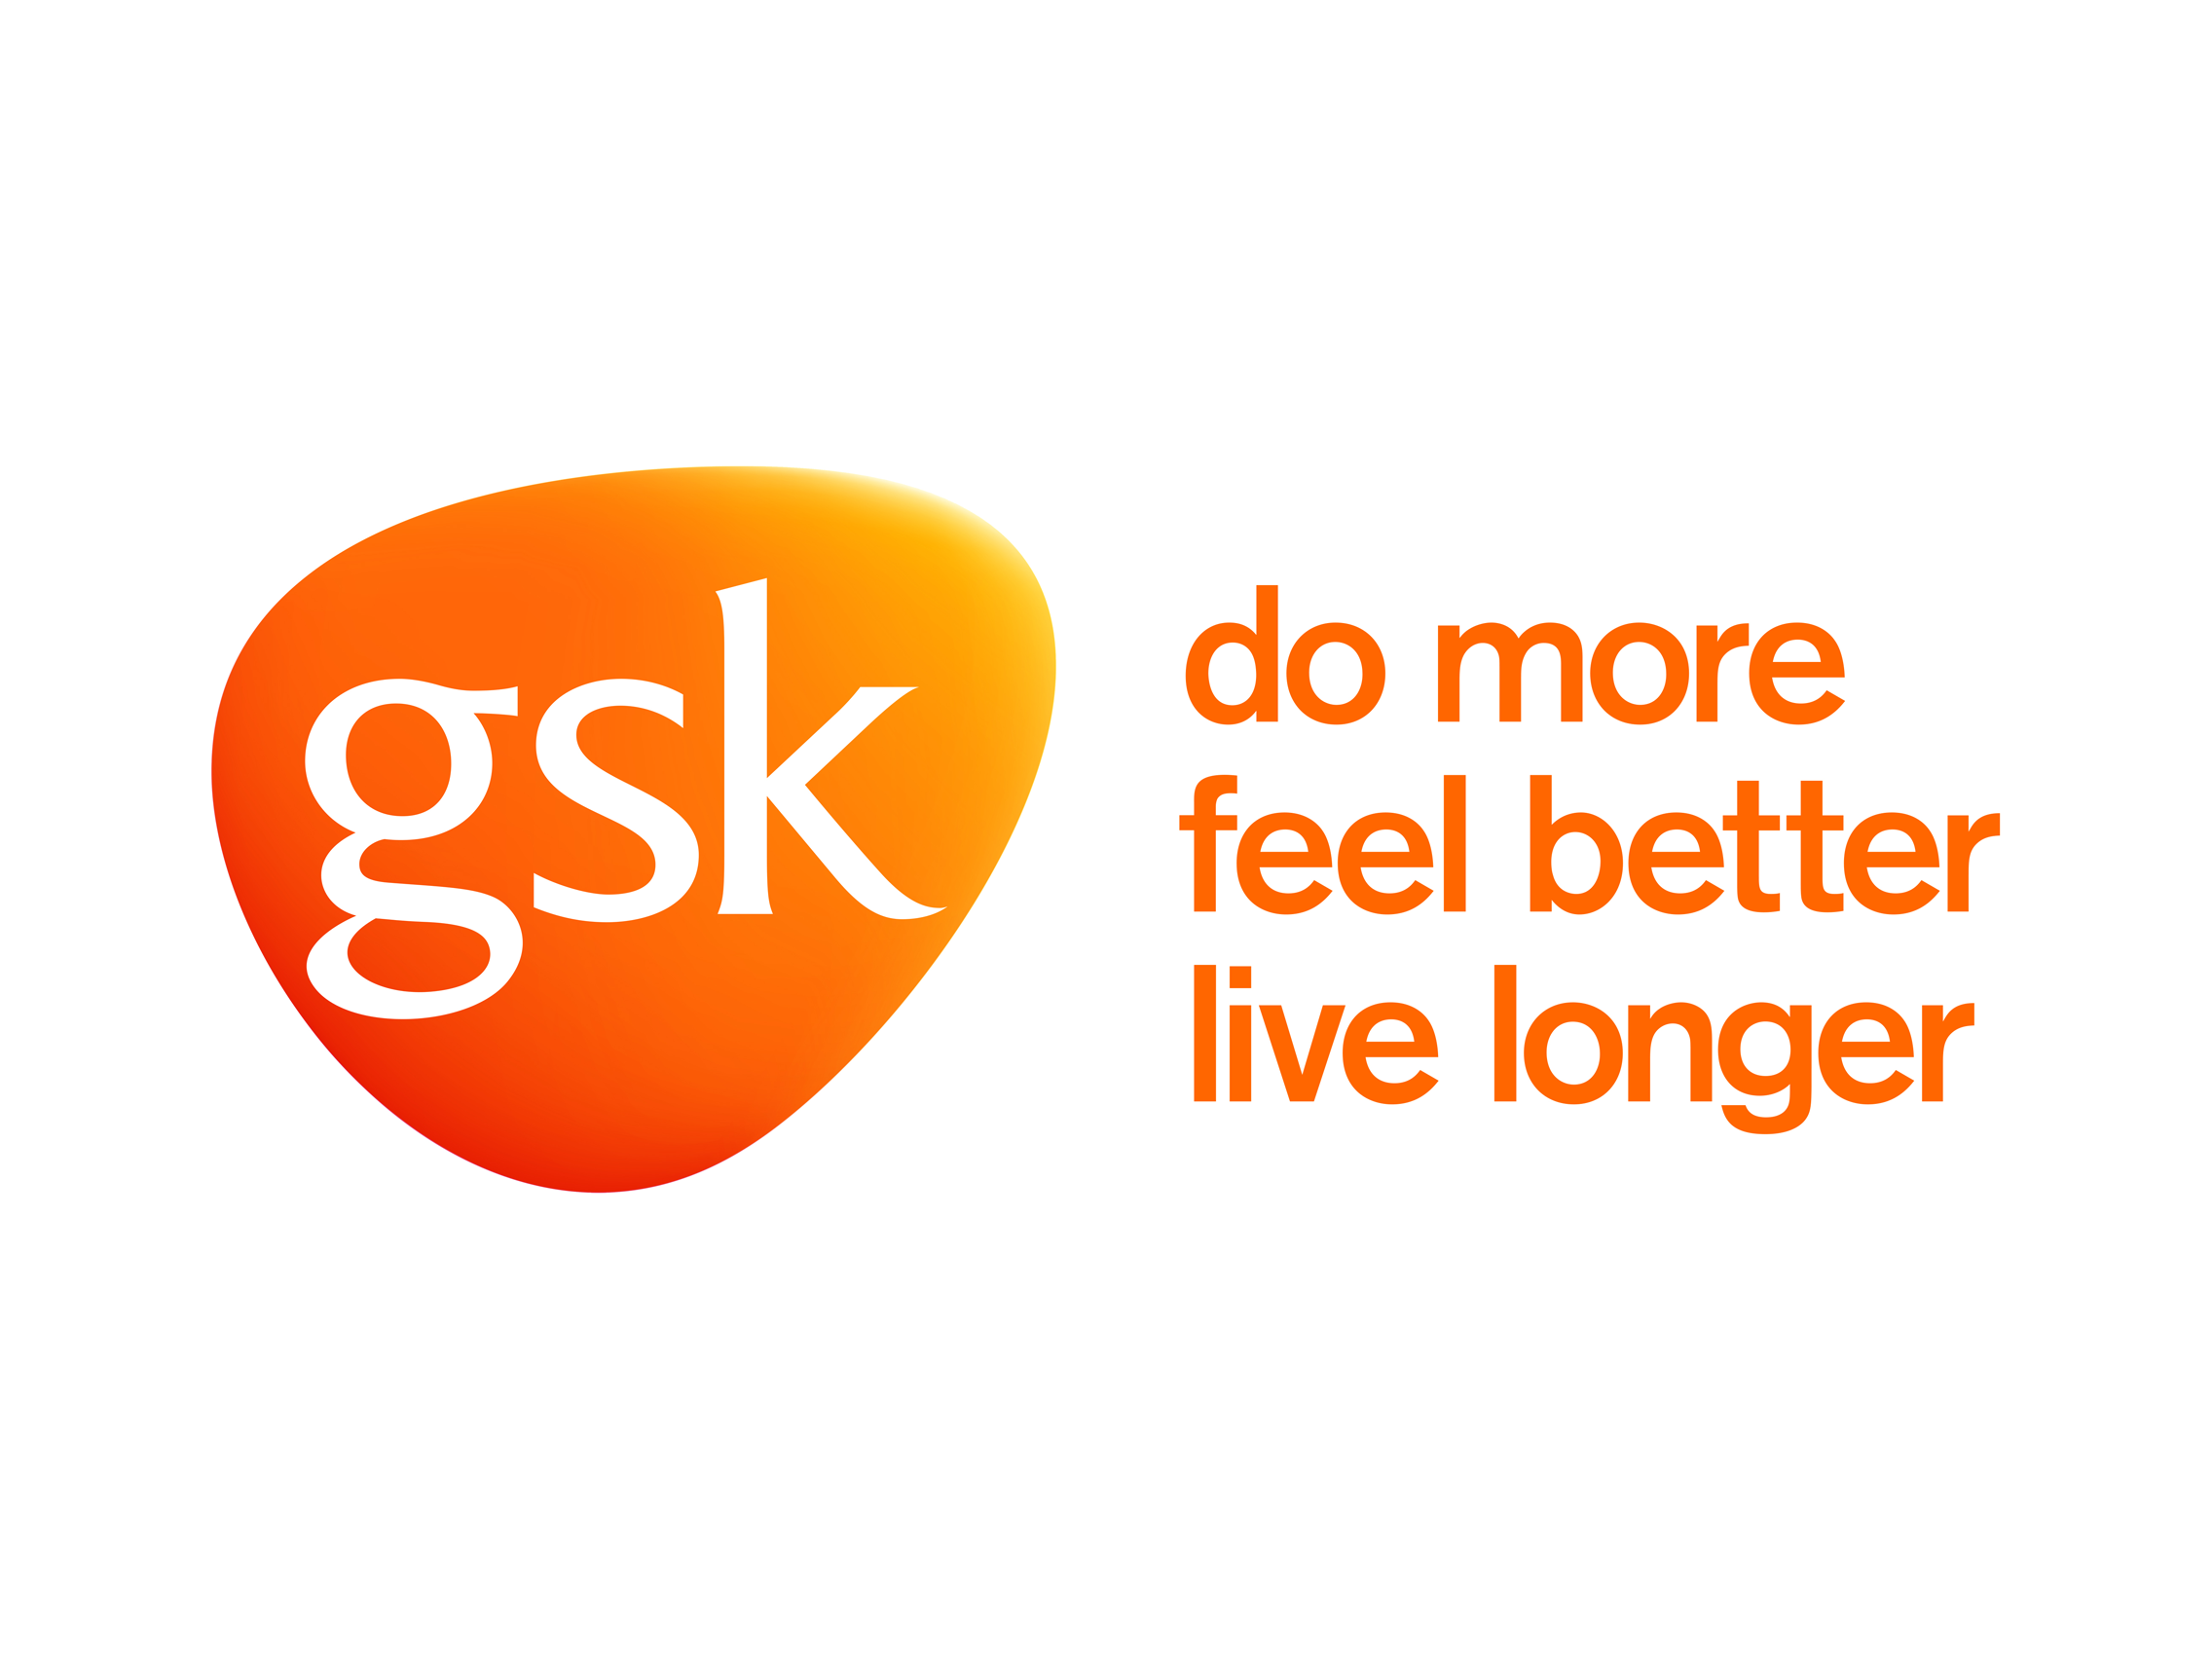 Glaxosmithkline Logo Transpar